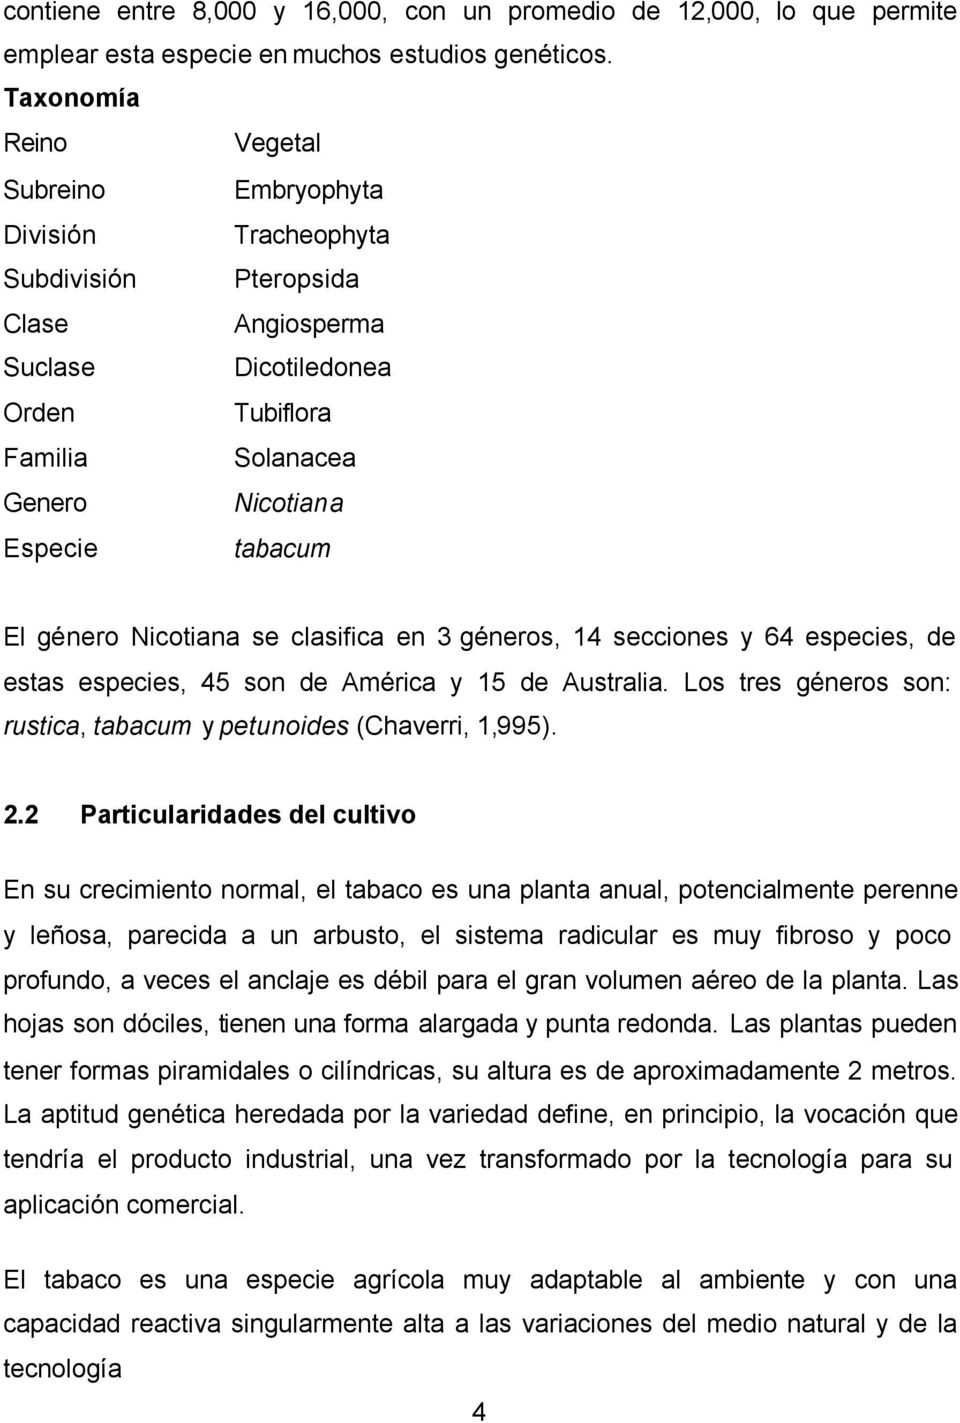 género Nicotiana se clasifica en 3 géneros, 14 secciones y 64 especies, de estas especies, 45 son de América y 15 de Australia. Los tres géneros son: rustica, tabacum y petunoides (Chaverri, 1,995).